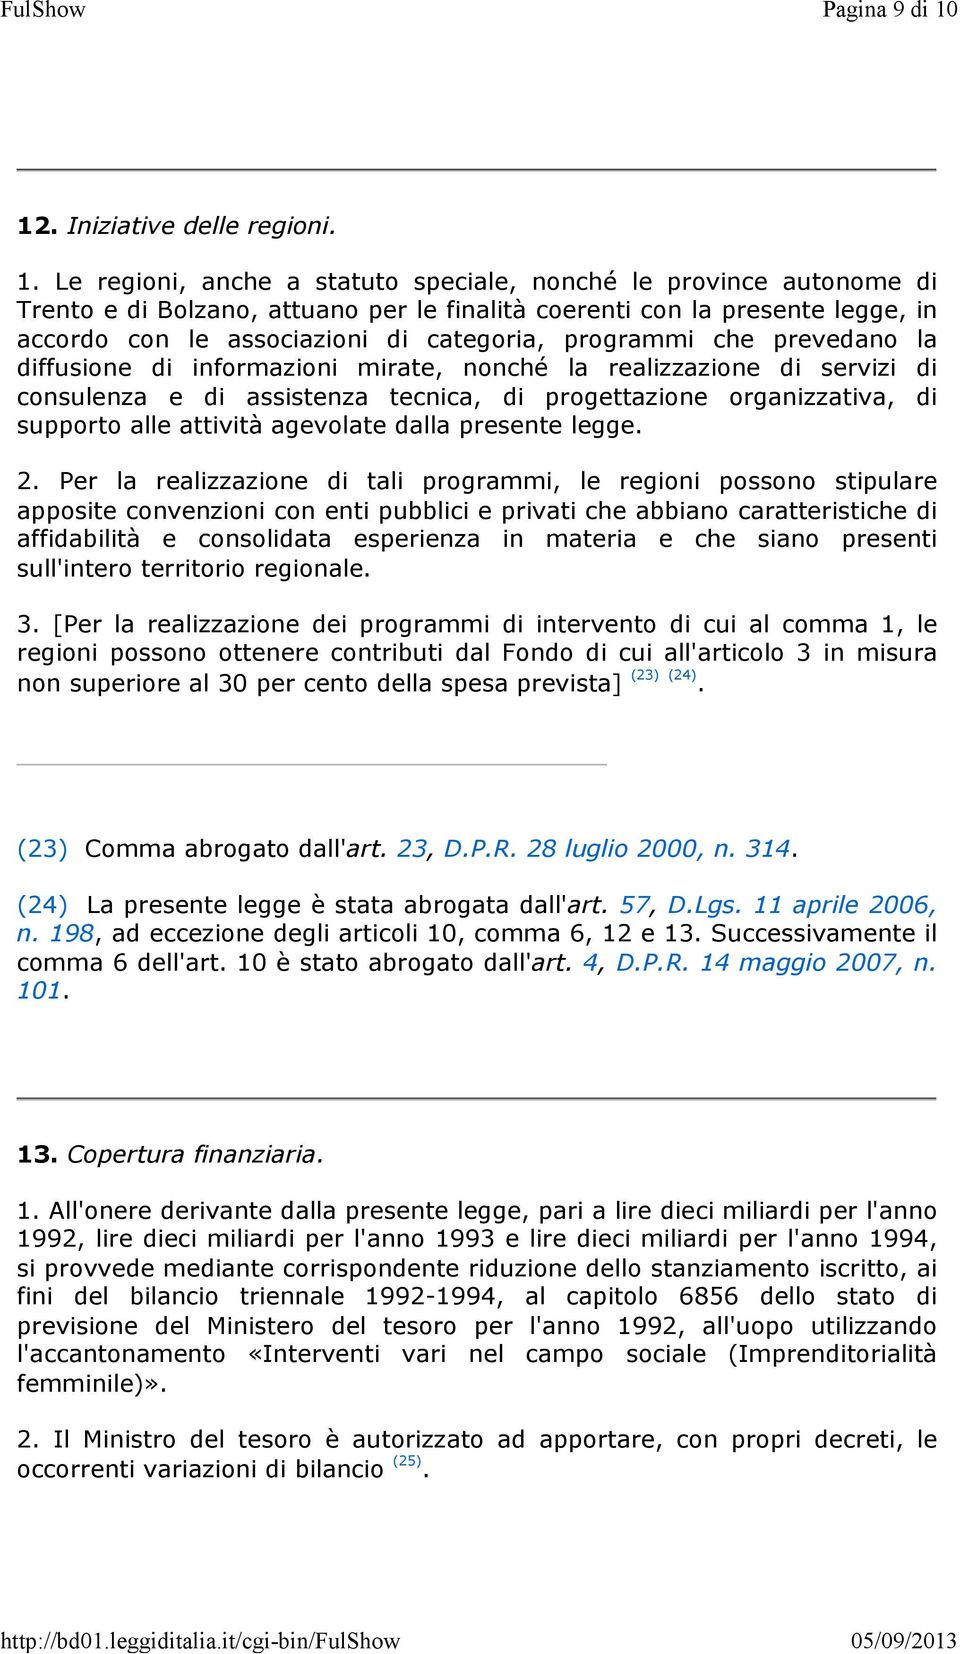 Le regioni, anche a statuto speciale, nonché le province autonome di Trento e di Bolzano, attuano per le finalità coerenti con la presente legge, in accordo con le associazioni di categoria,